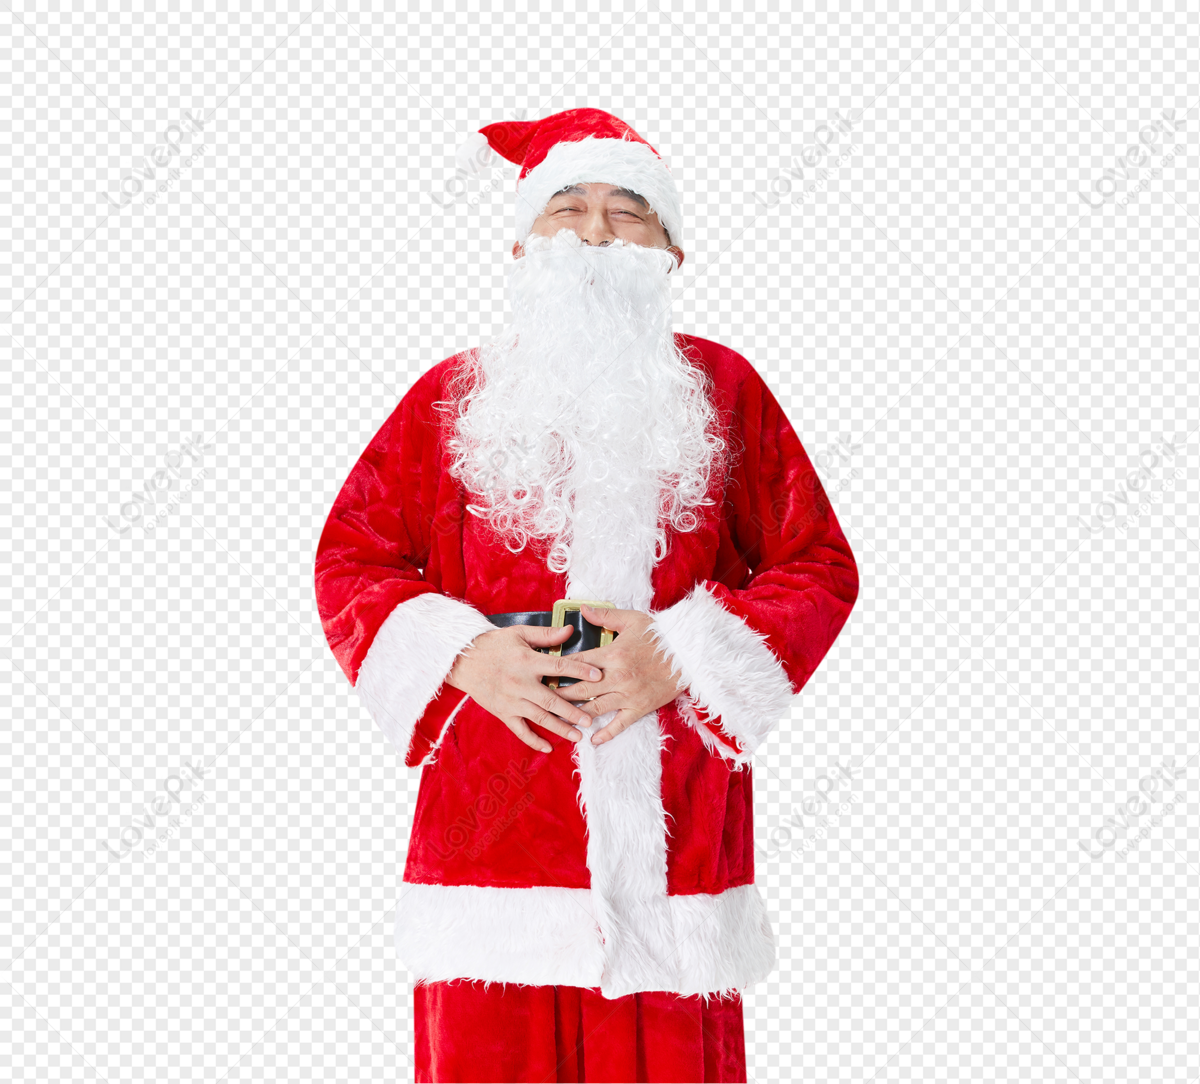 Hình ảnh ông già Noel chắc chắn là một trong những điều tuyệt vời nhất mà bạn sẽ thấy trong mùa giáng sinh này. Bạn sẽ được chiêm ngưỡng những bức ảnh thật đẹp và màu sắc tuyệt vời khi nhìn thấy ông già Noel trong trang phục của mình.